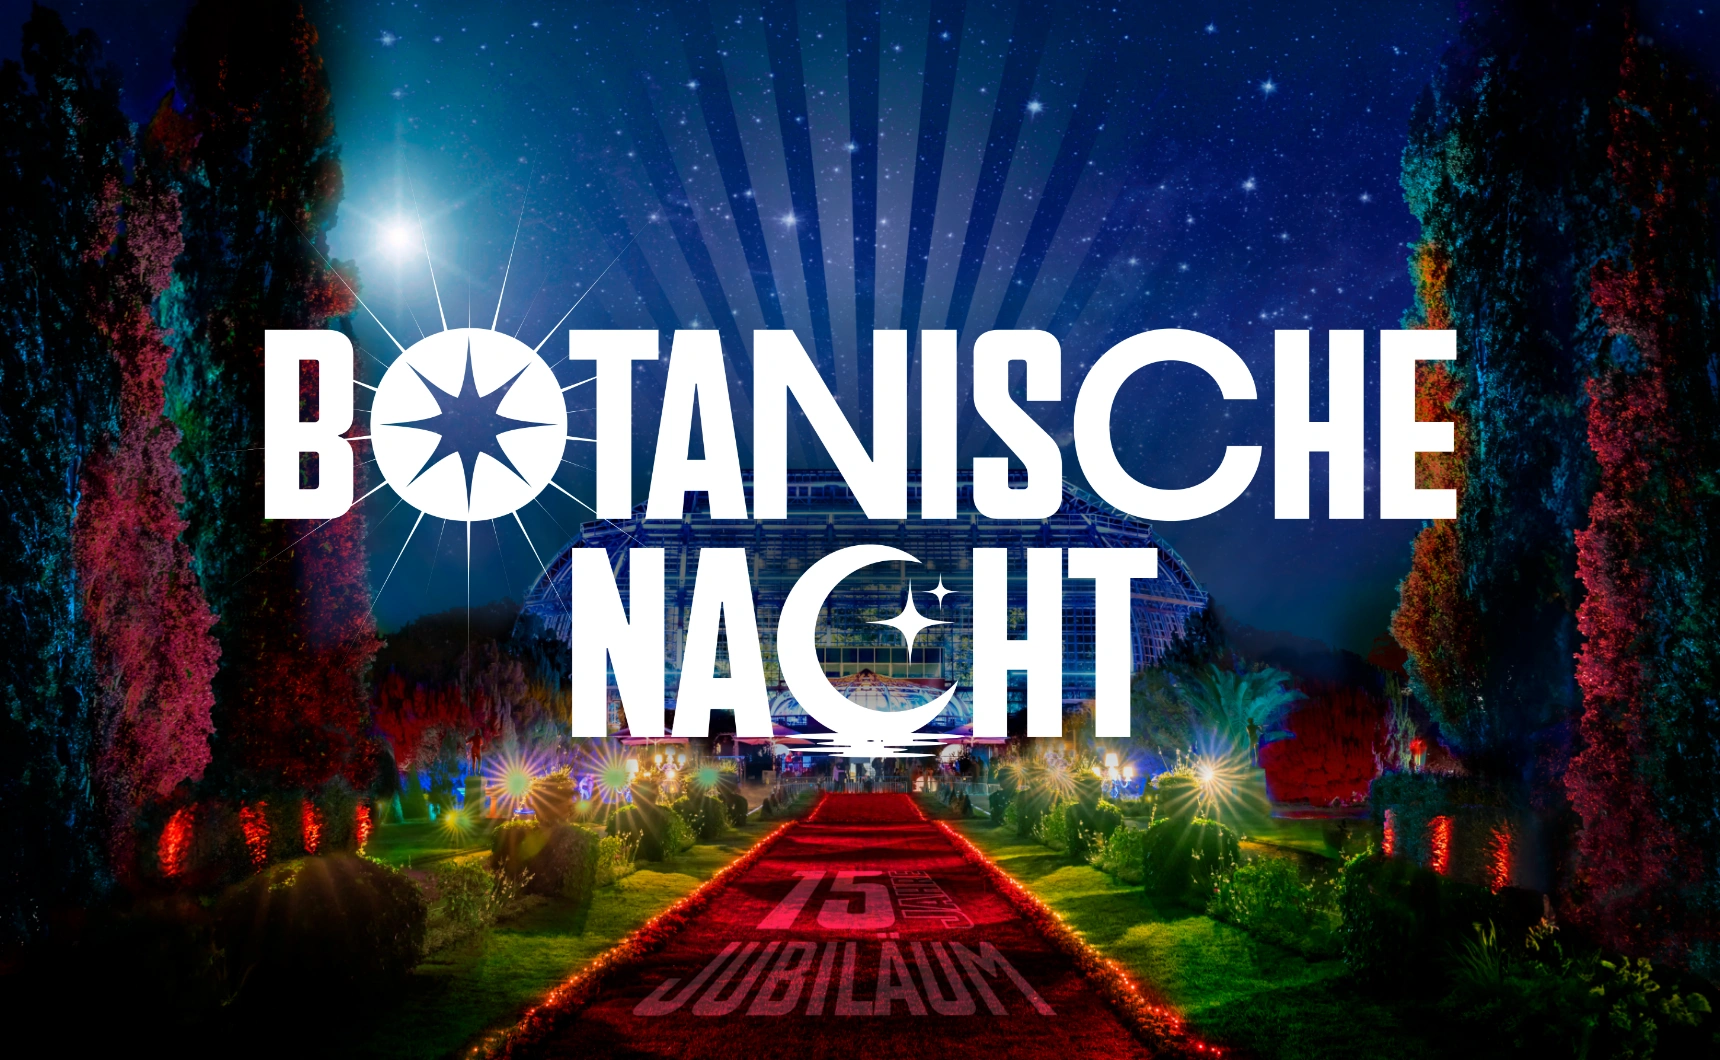 Ein Bild zeigt das Poster der Botanischen Nacht 2023 im Botanischen Garten in Berlin.